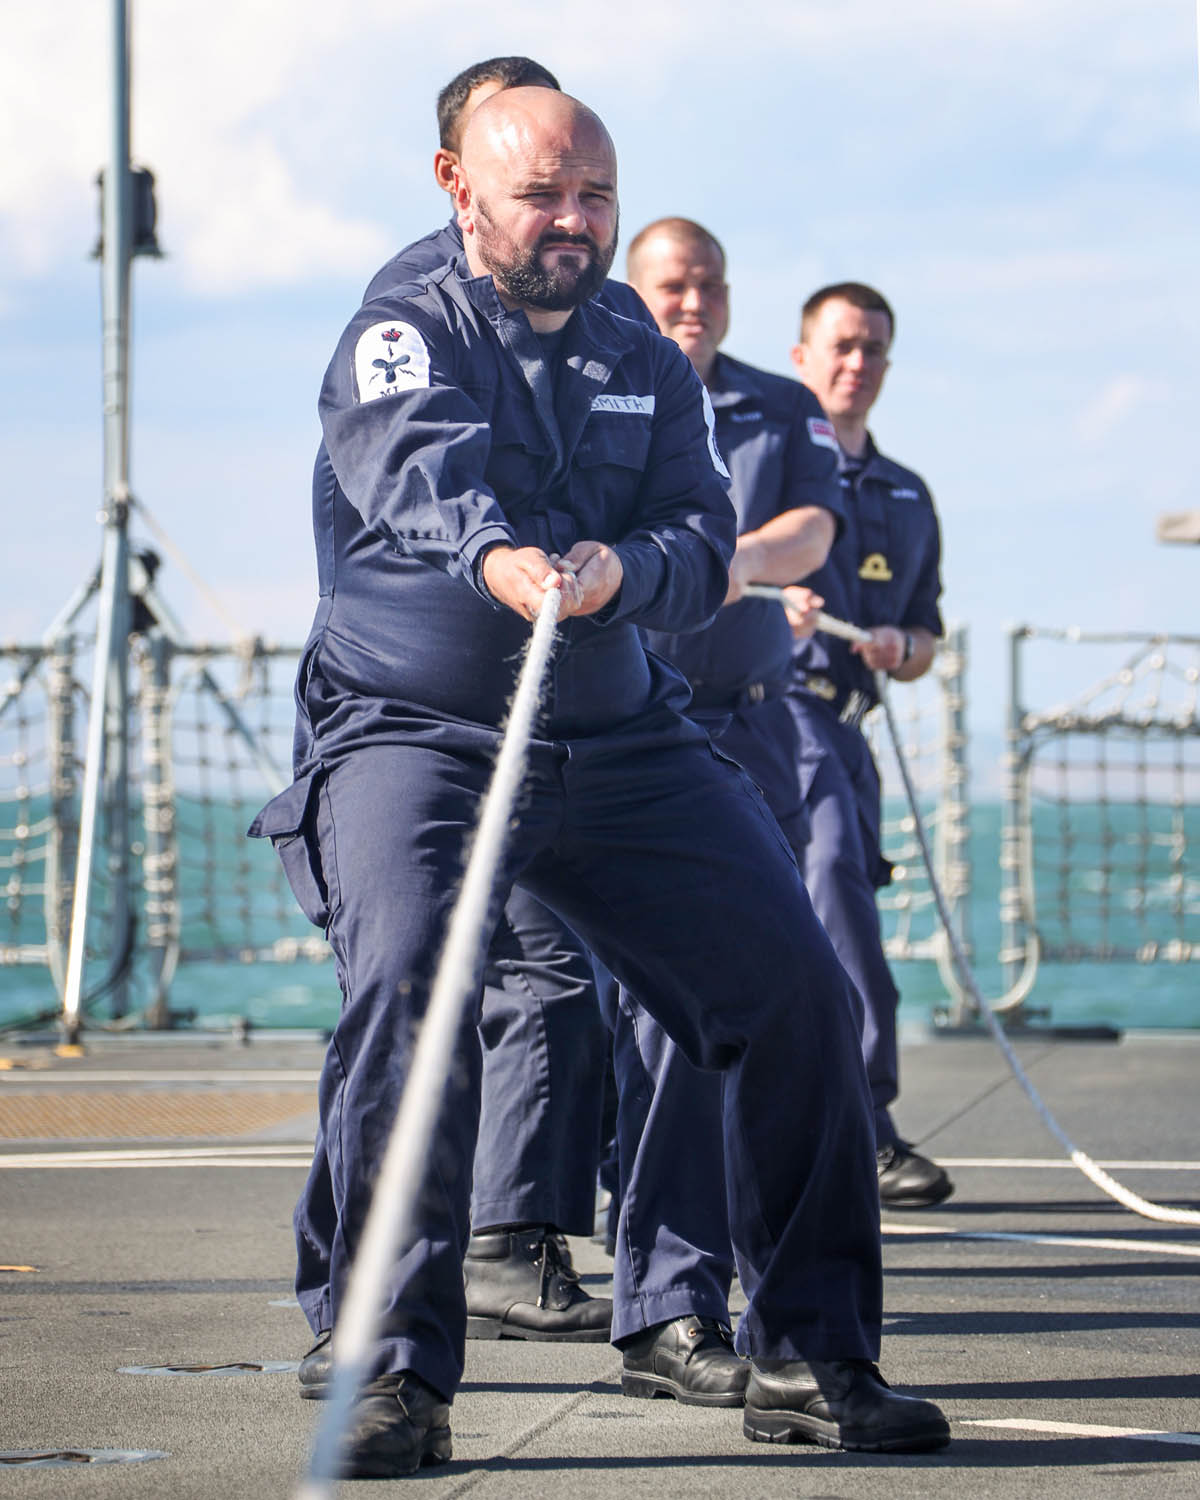 HMS Trent Operation Seaguardian